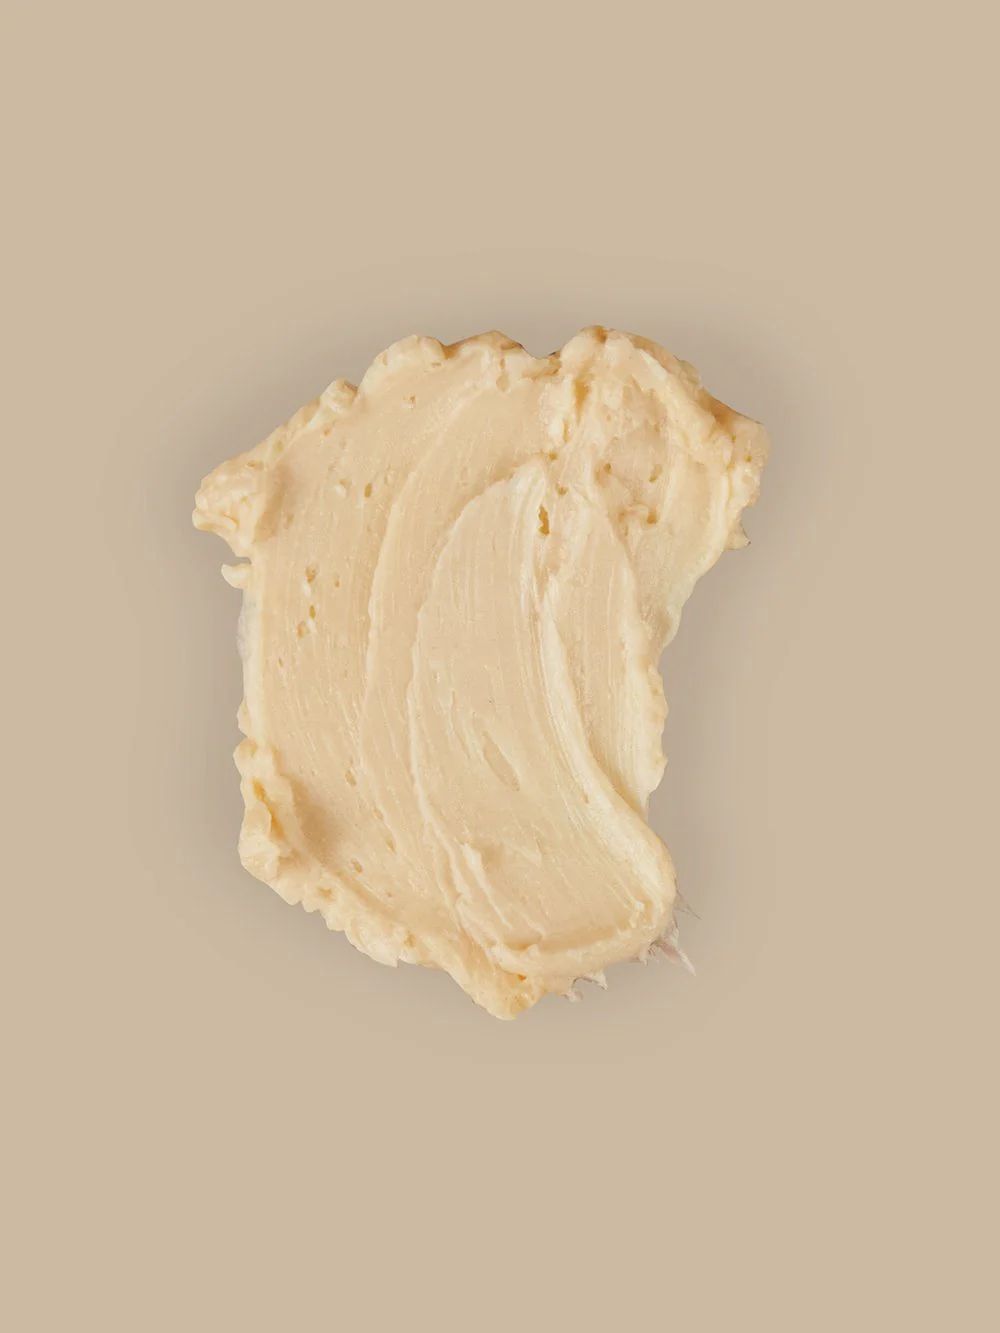 Almond + Vanilla Body Butter | Primally Pure